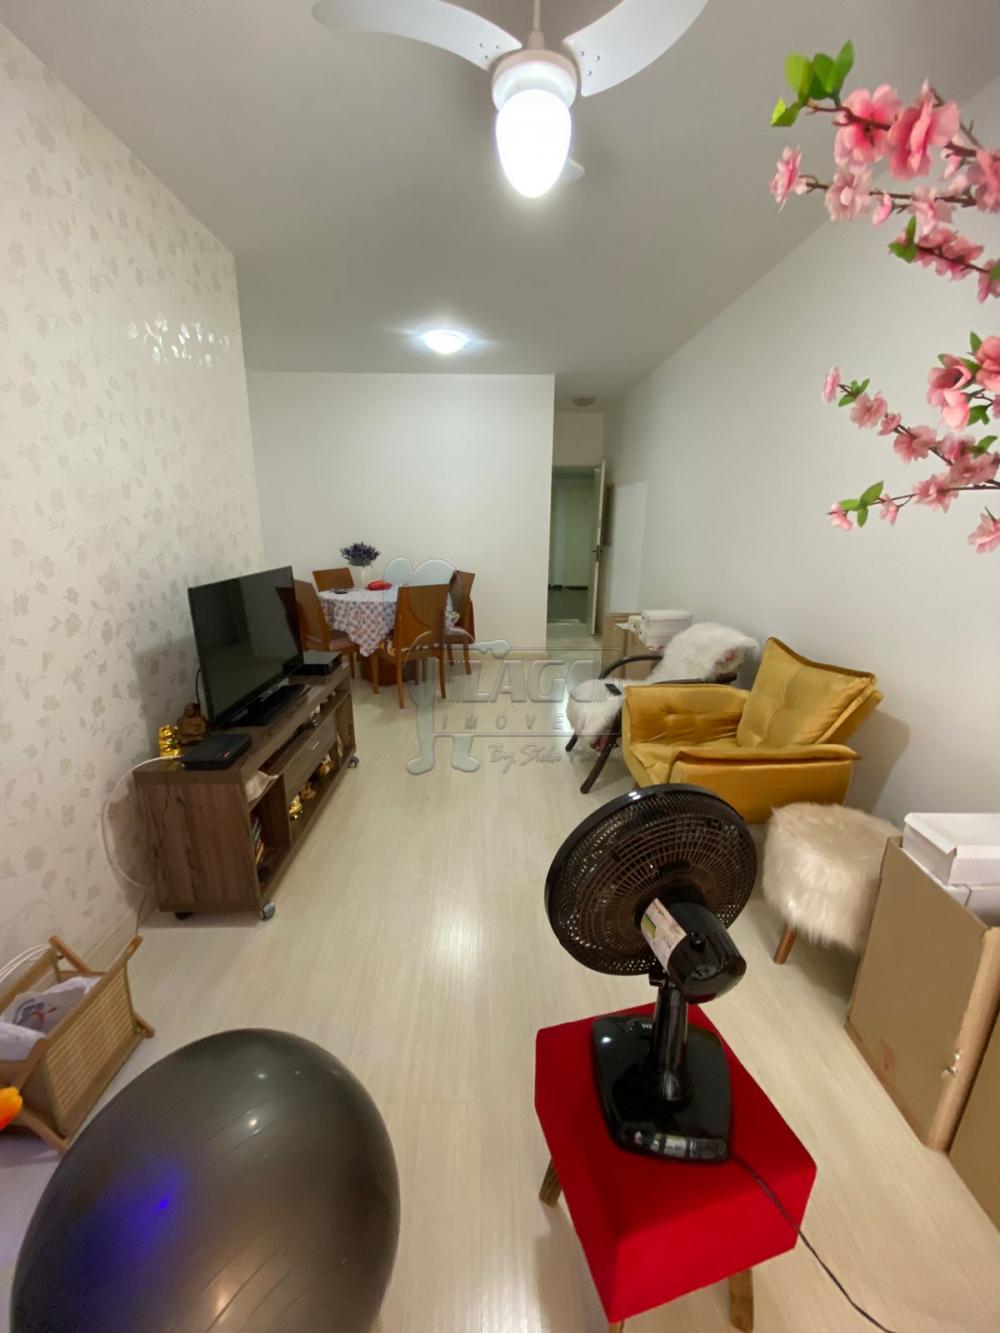 Comprar Apartamentos / Padrão em Ribeirão Preto R$ 371.000,00 - Foto 2